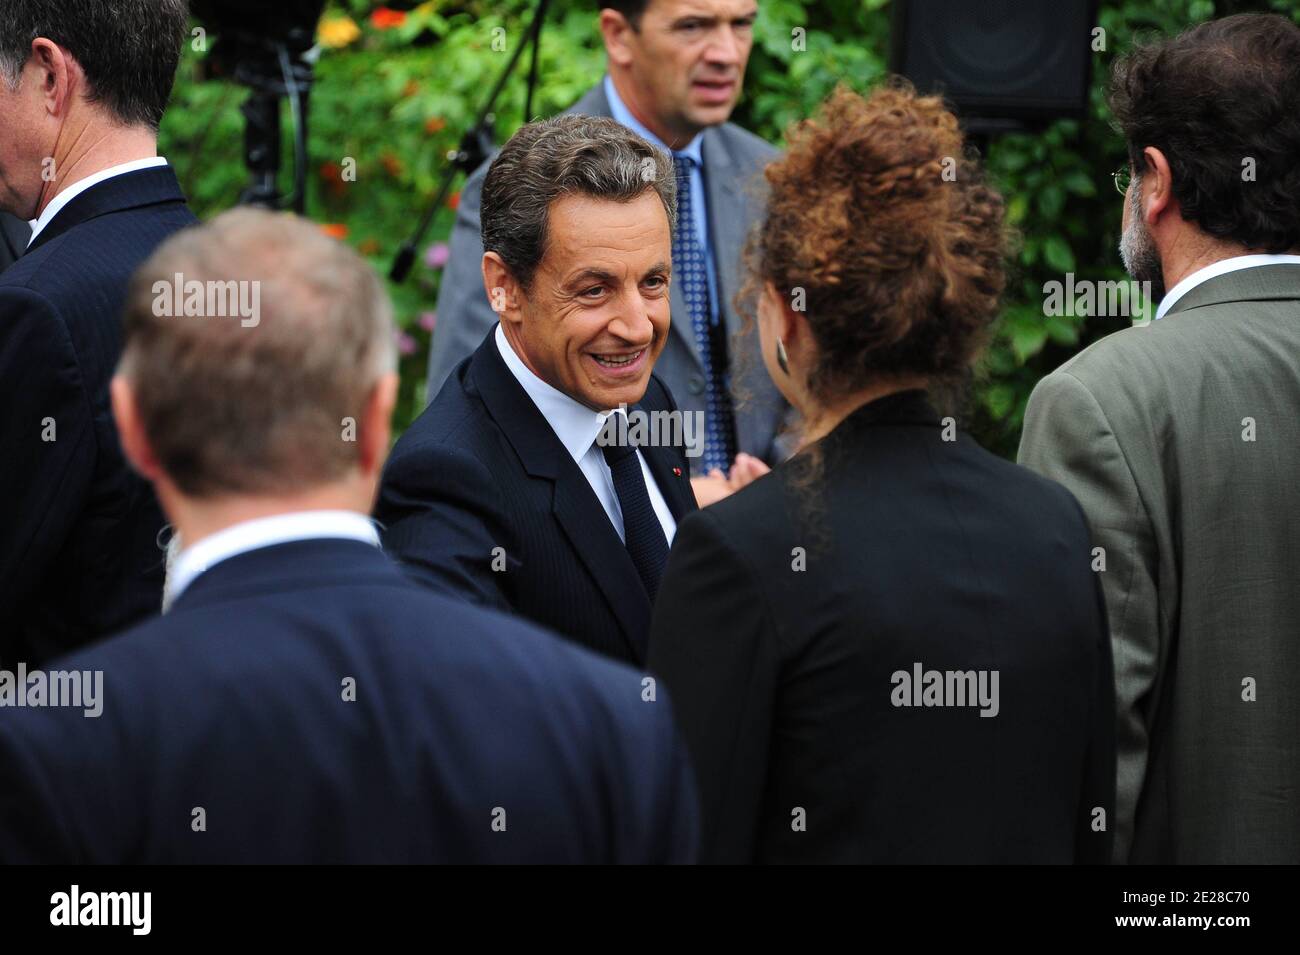 Il presidente francese Nicolas Sarkozy viene raffigurato durante la celebrazione del 10° anniversario del 11 settembre presso l'ambasciata degli Stati Uniti a Parigi, Francia, il 9 settembre 2011. Foto di Mousse/ABACAPRESS.COM Foto Stock